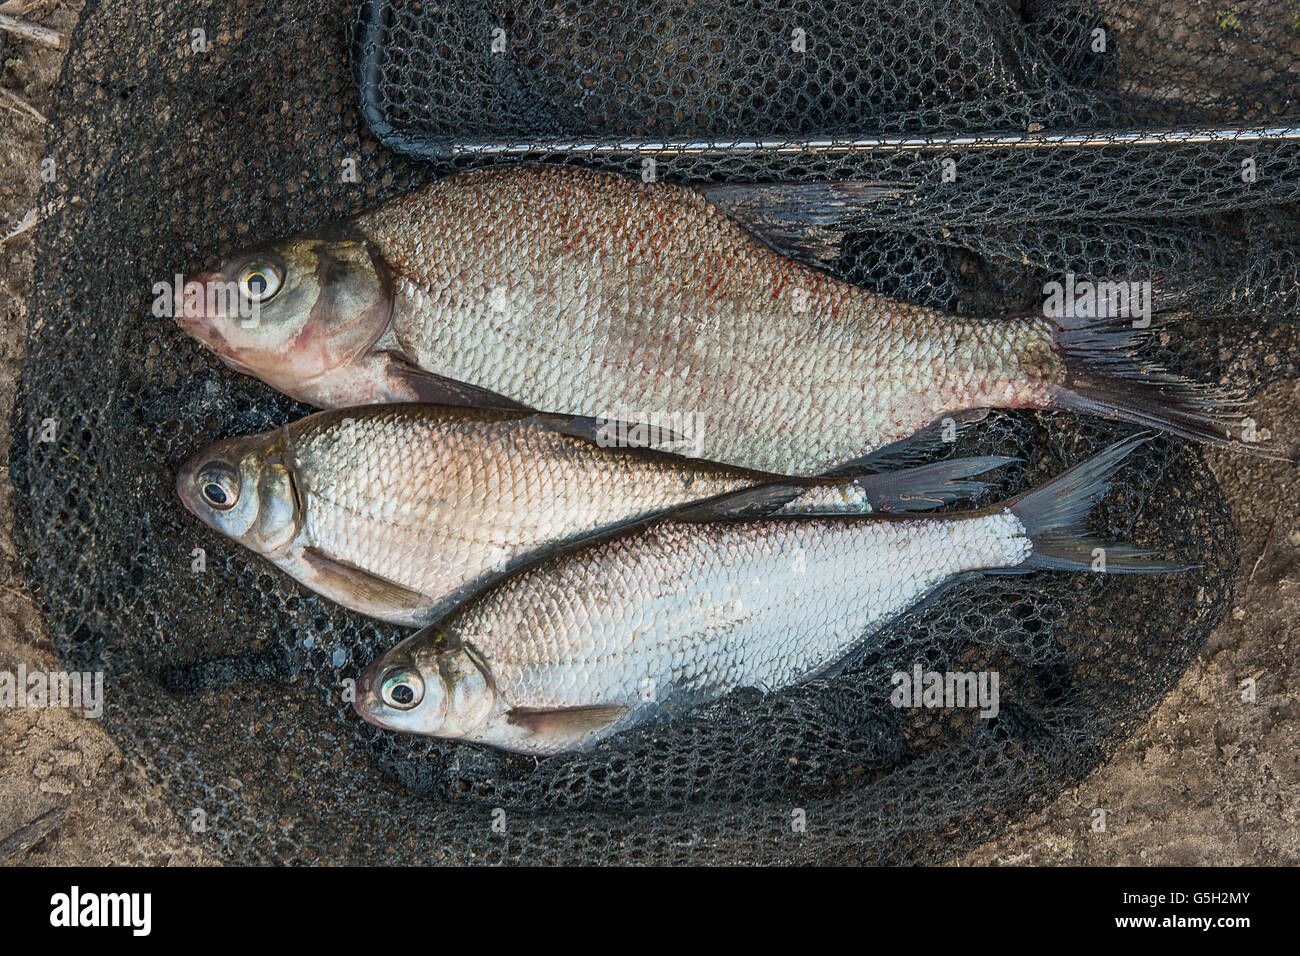 Los peces de agua dulce sólo tomadas desde el agua. Varios peces de besugo y plata dorada o el sargo en la red de pesca. Foto de stock